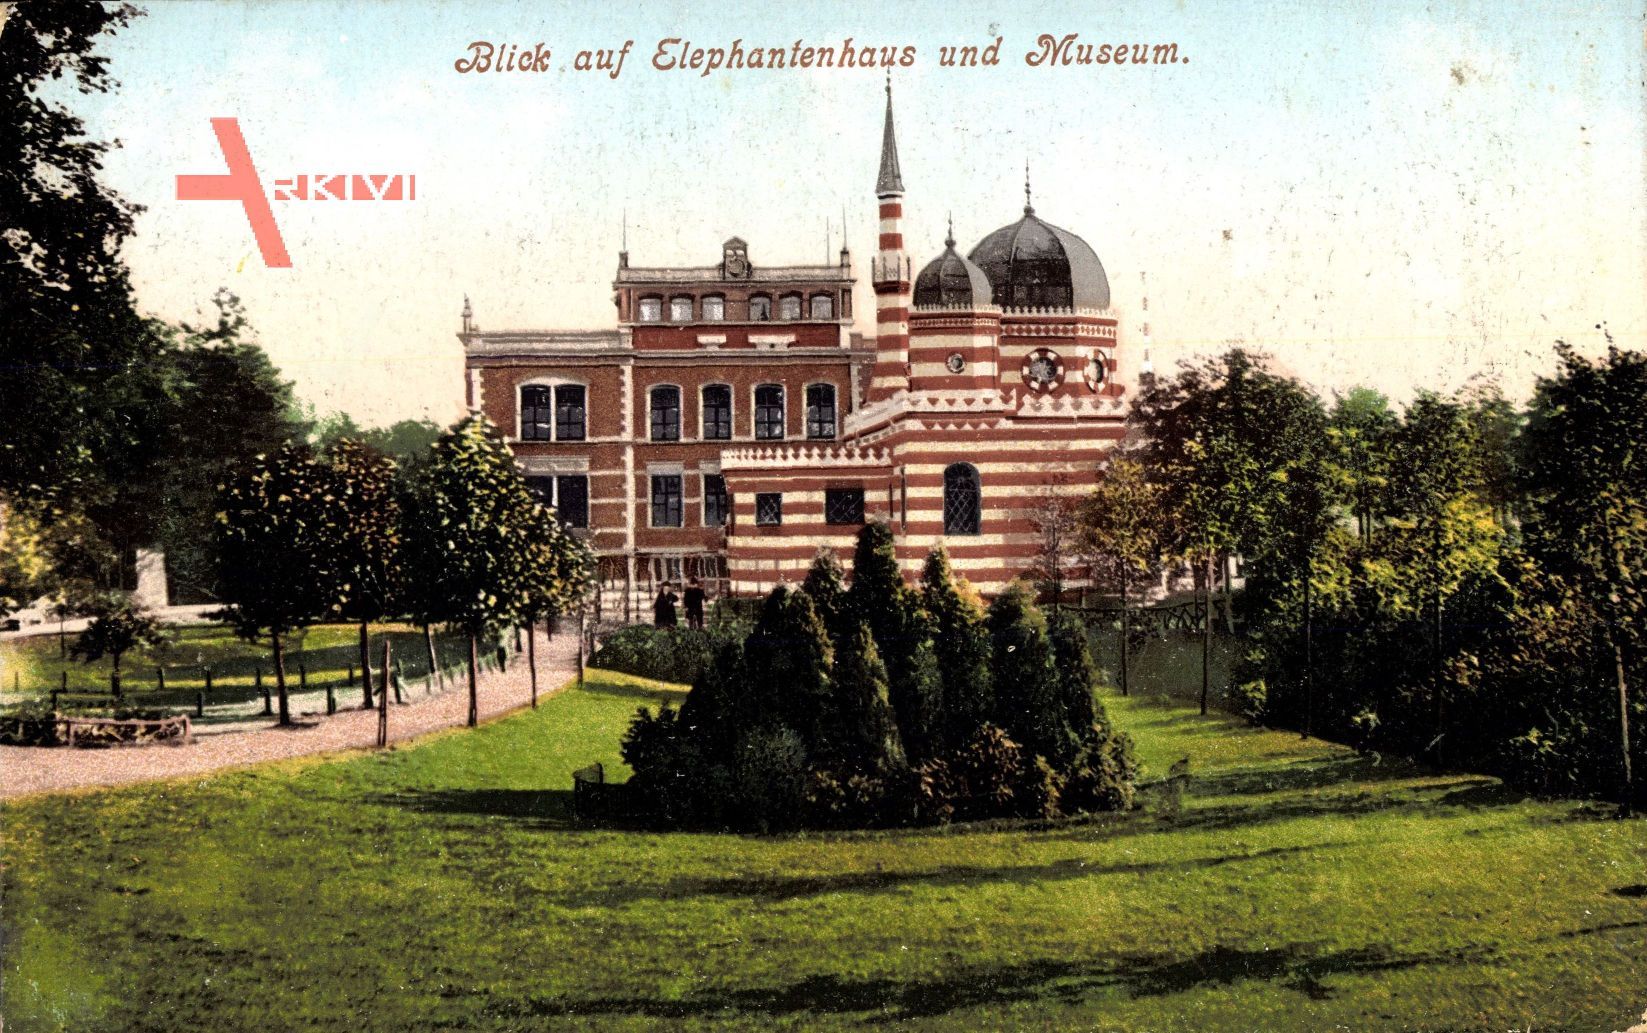 Münster Westfalen, Blick auf das Elephantenhaus und Museum, Zoo